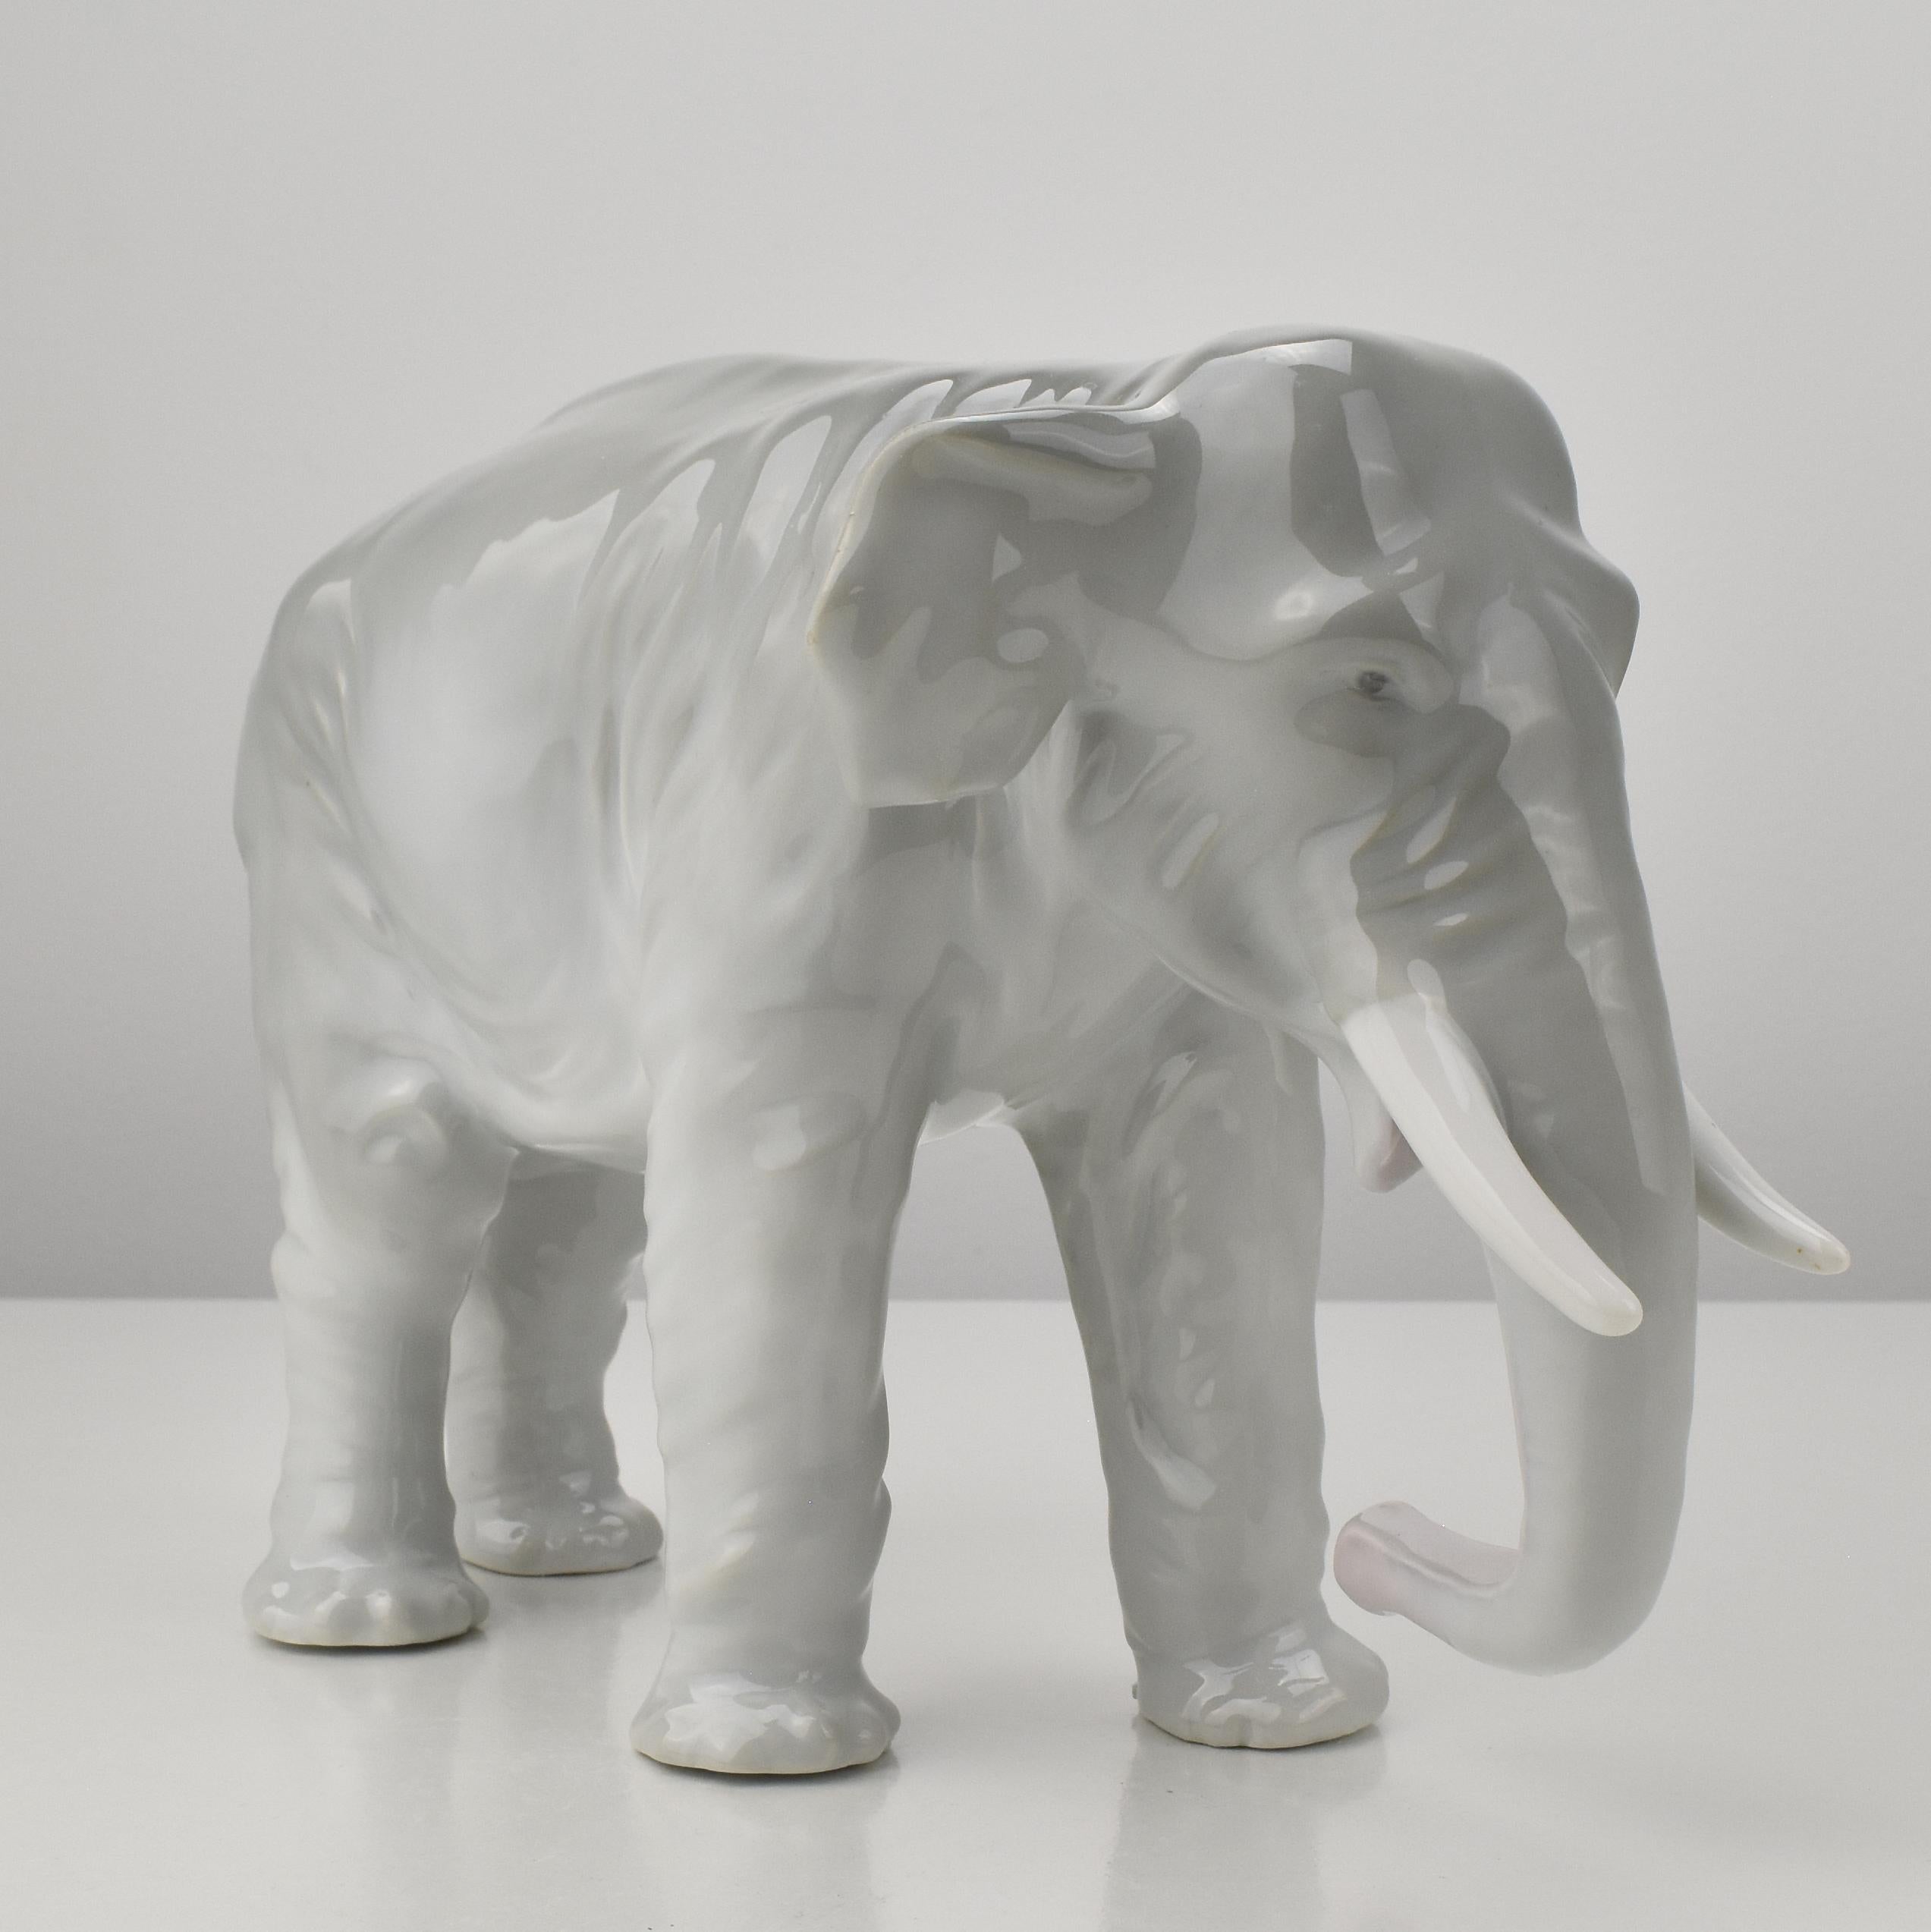 Figurine d'éléphant de forme naturaliste et finement détaillée, datant de l'époque de l'Art nouveau, vers 1910.
L'éléphant porte une marque de fabricant verte non identifiée.